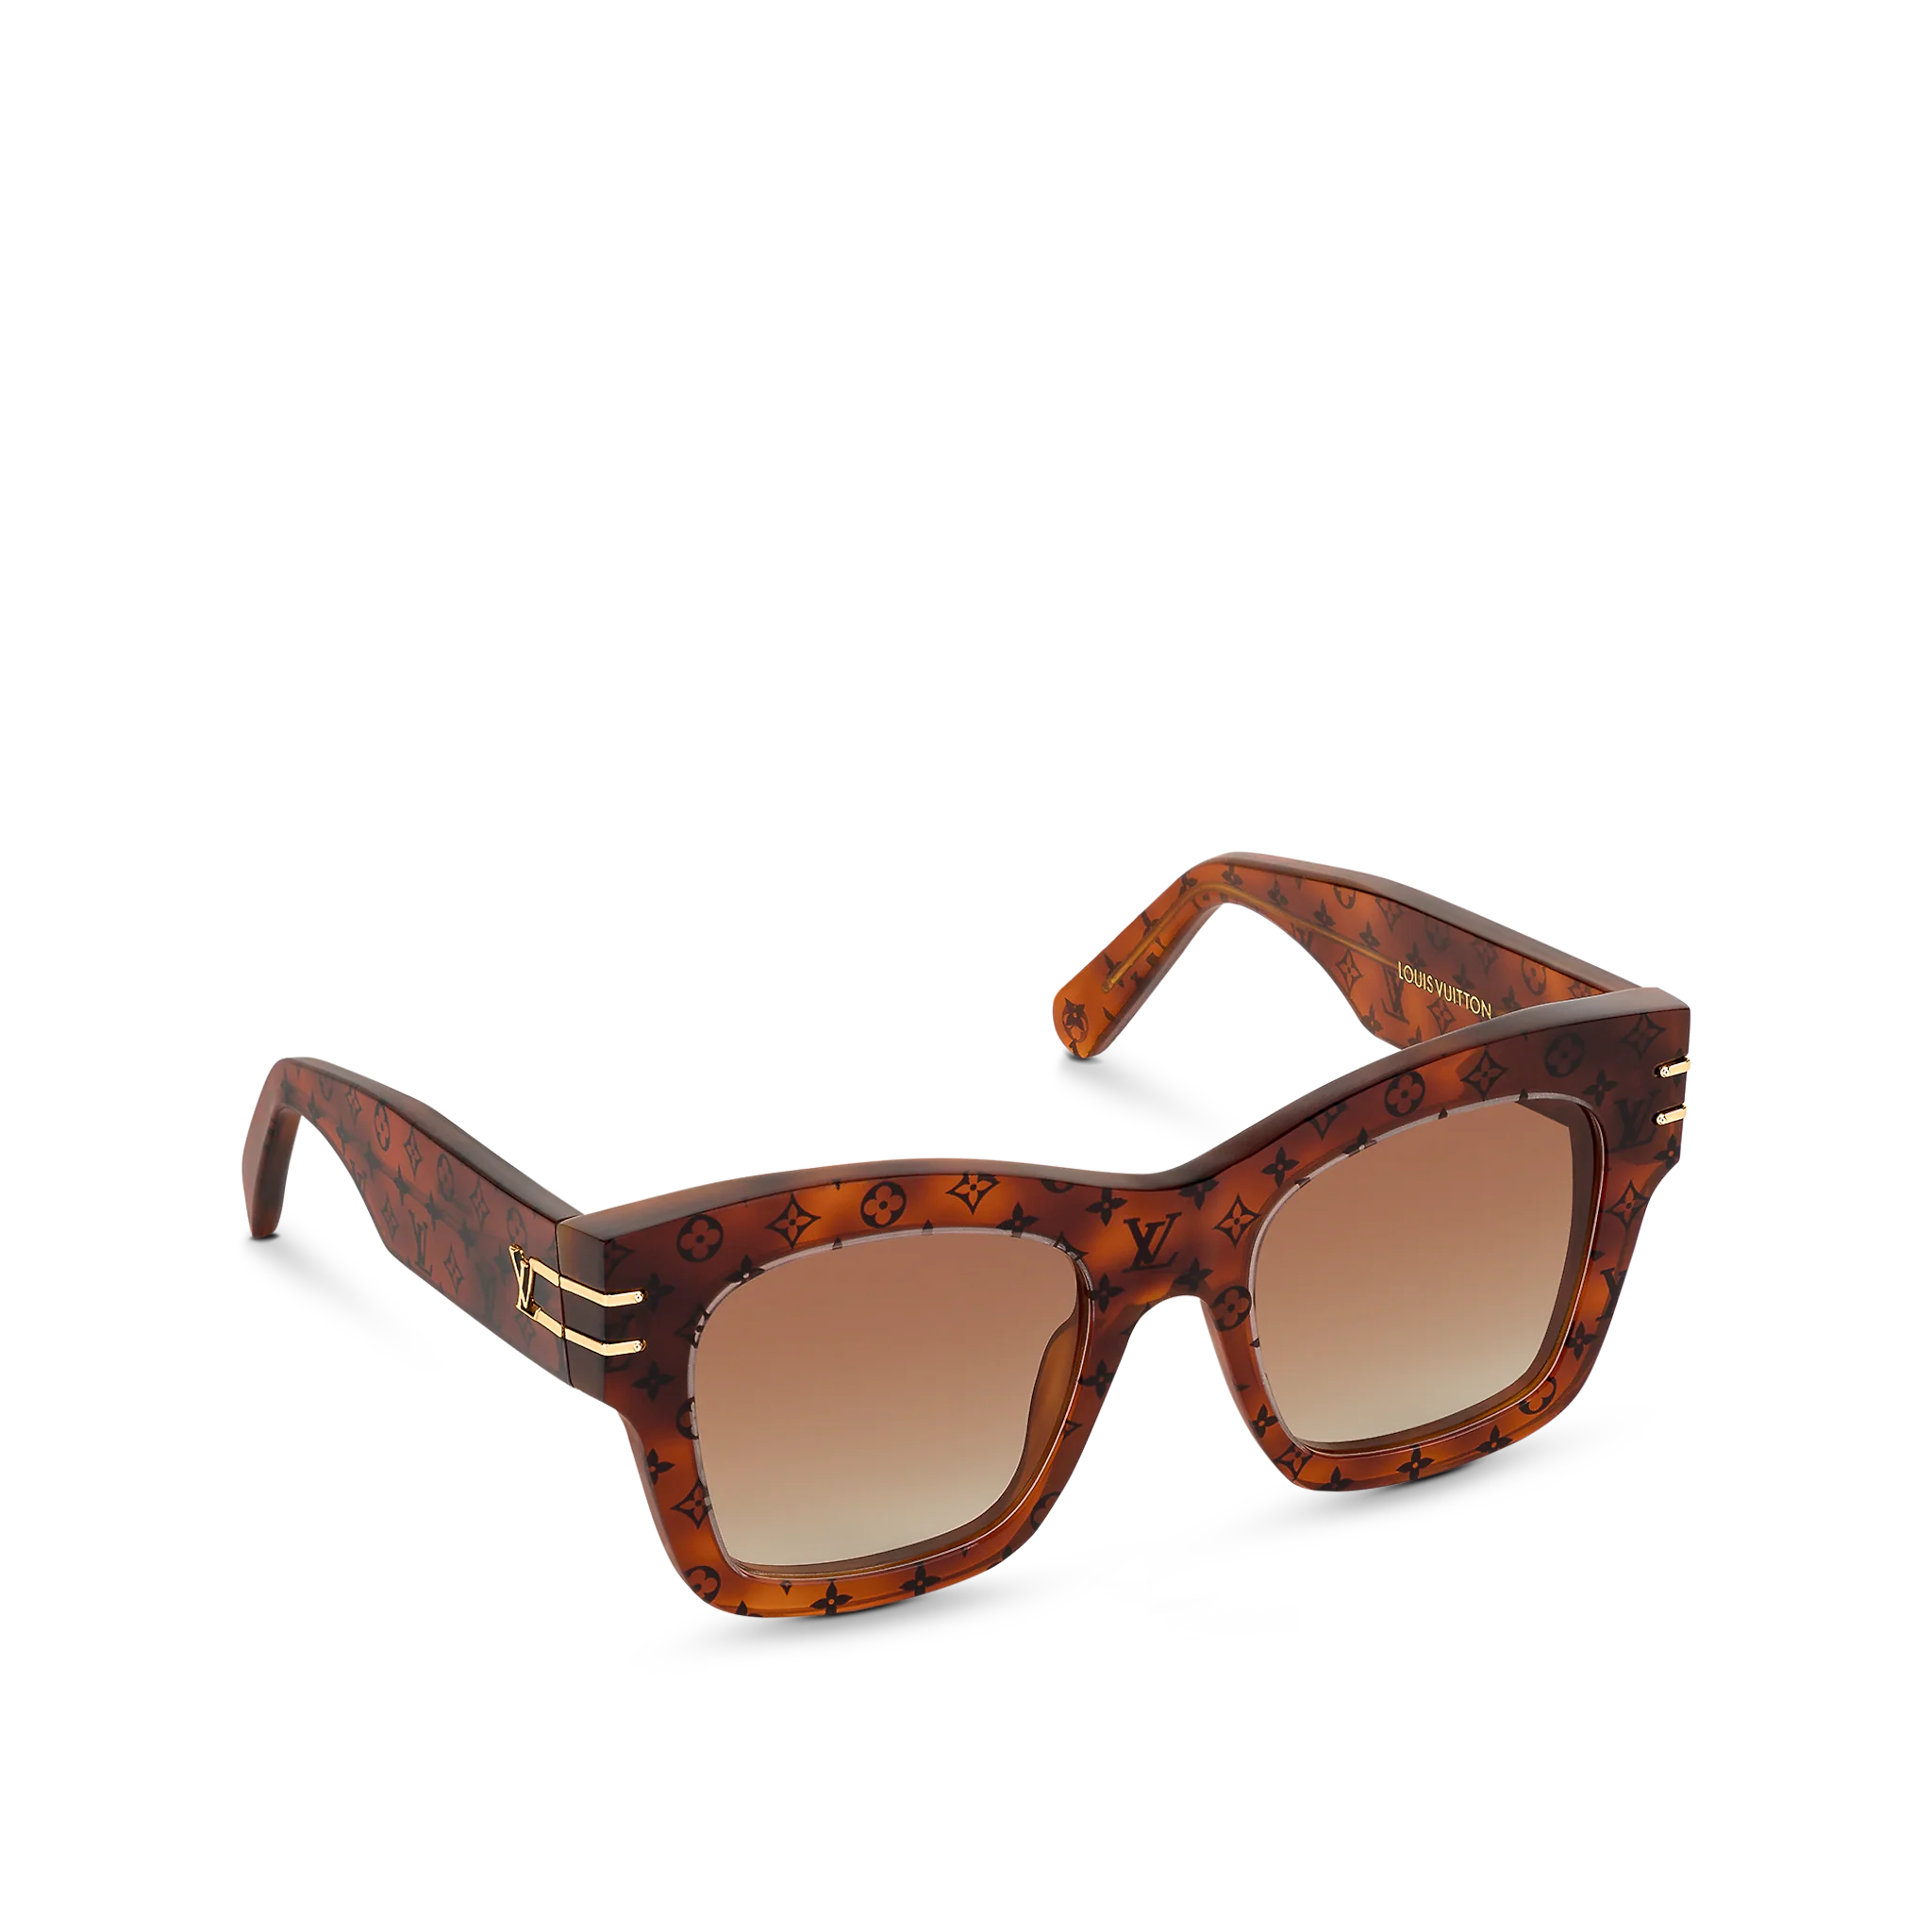 Luxury Brand Sunglasses - sunhauls